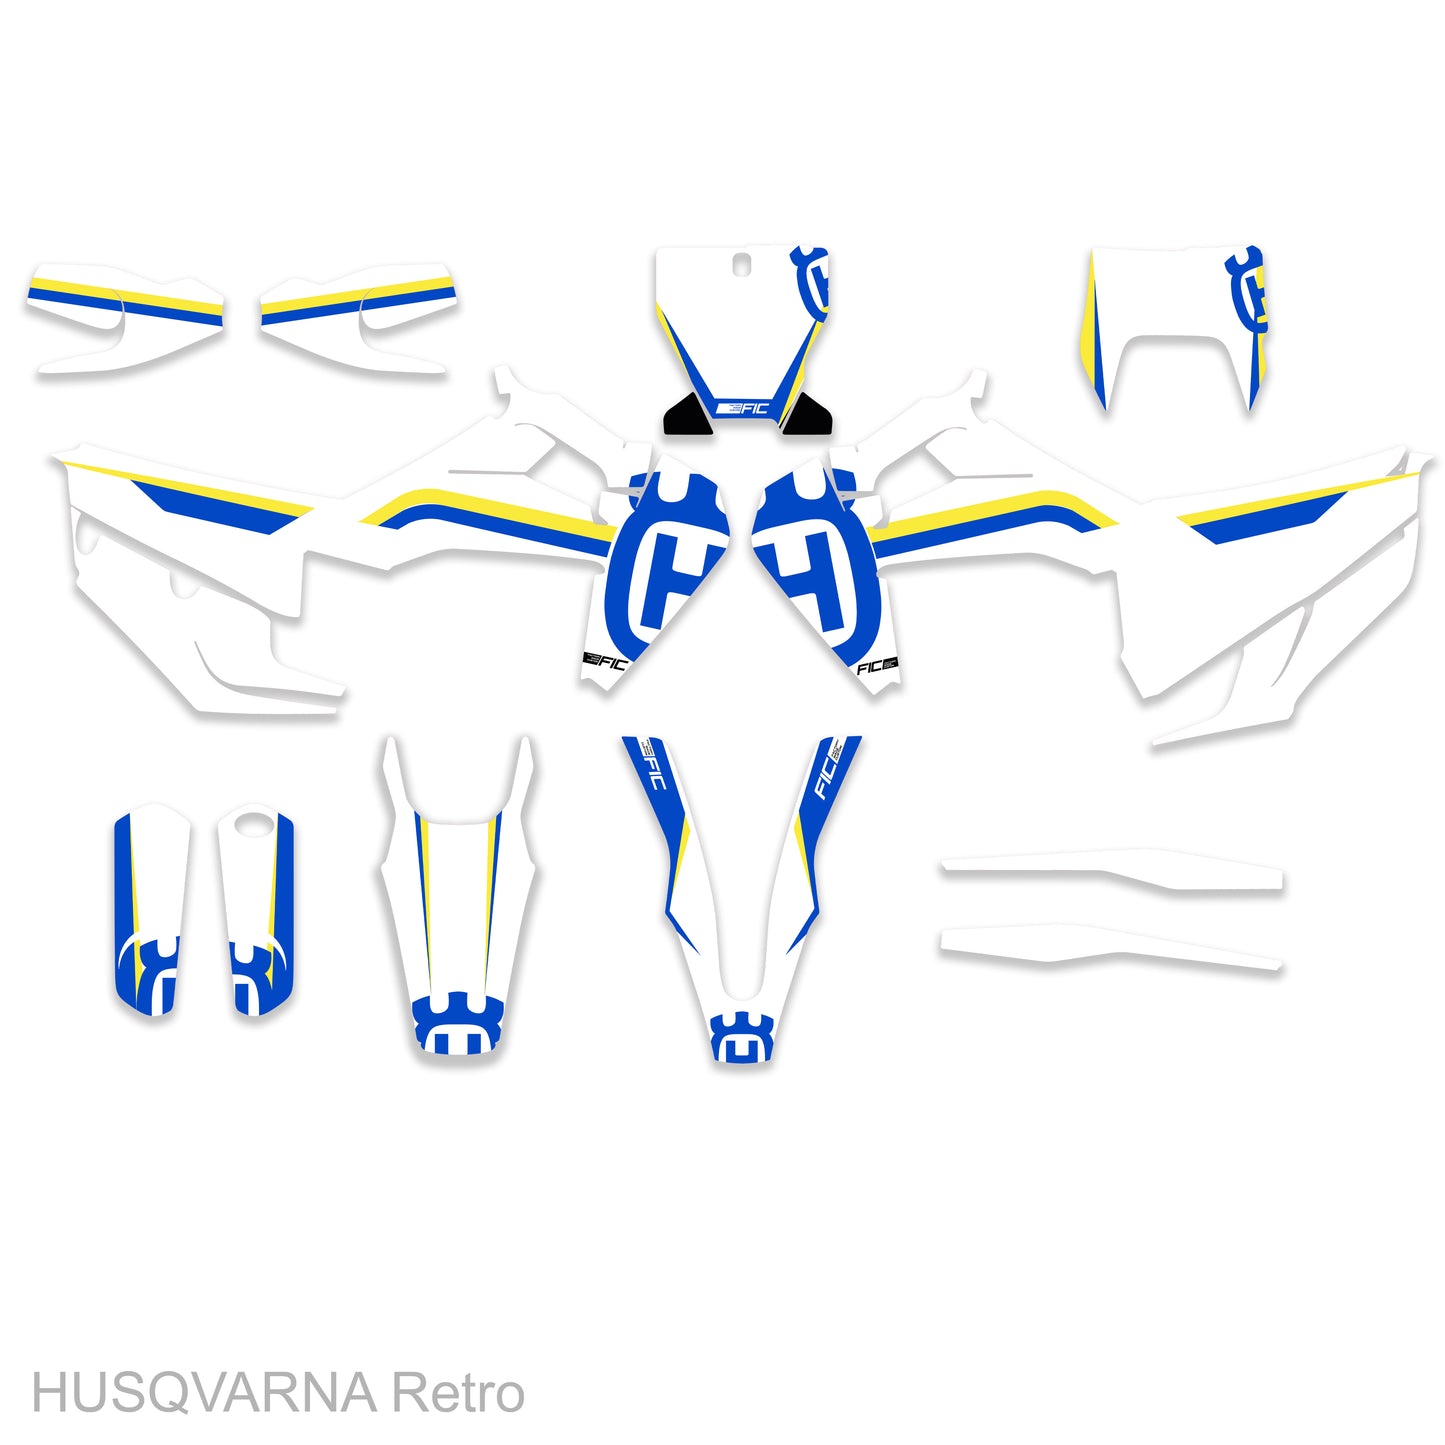 HUSQVARNA TE/FE 125-450 2020 - 2023 Retro Graphics Kit